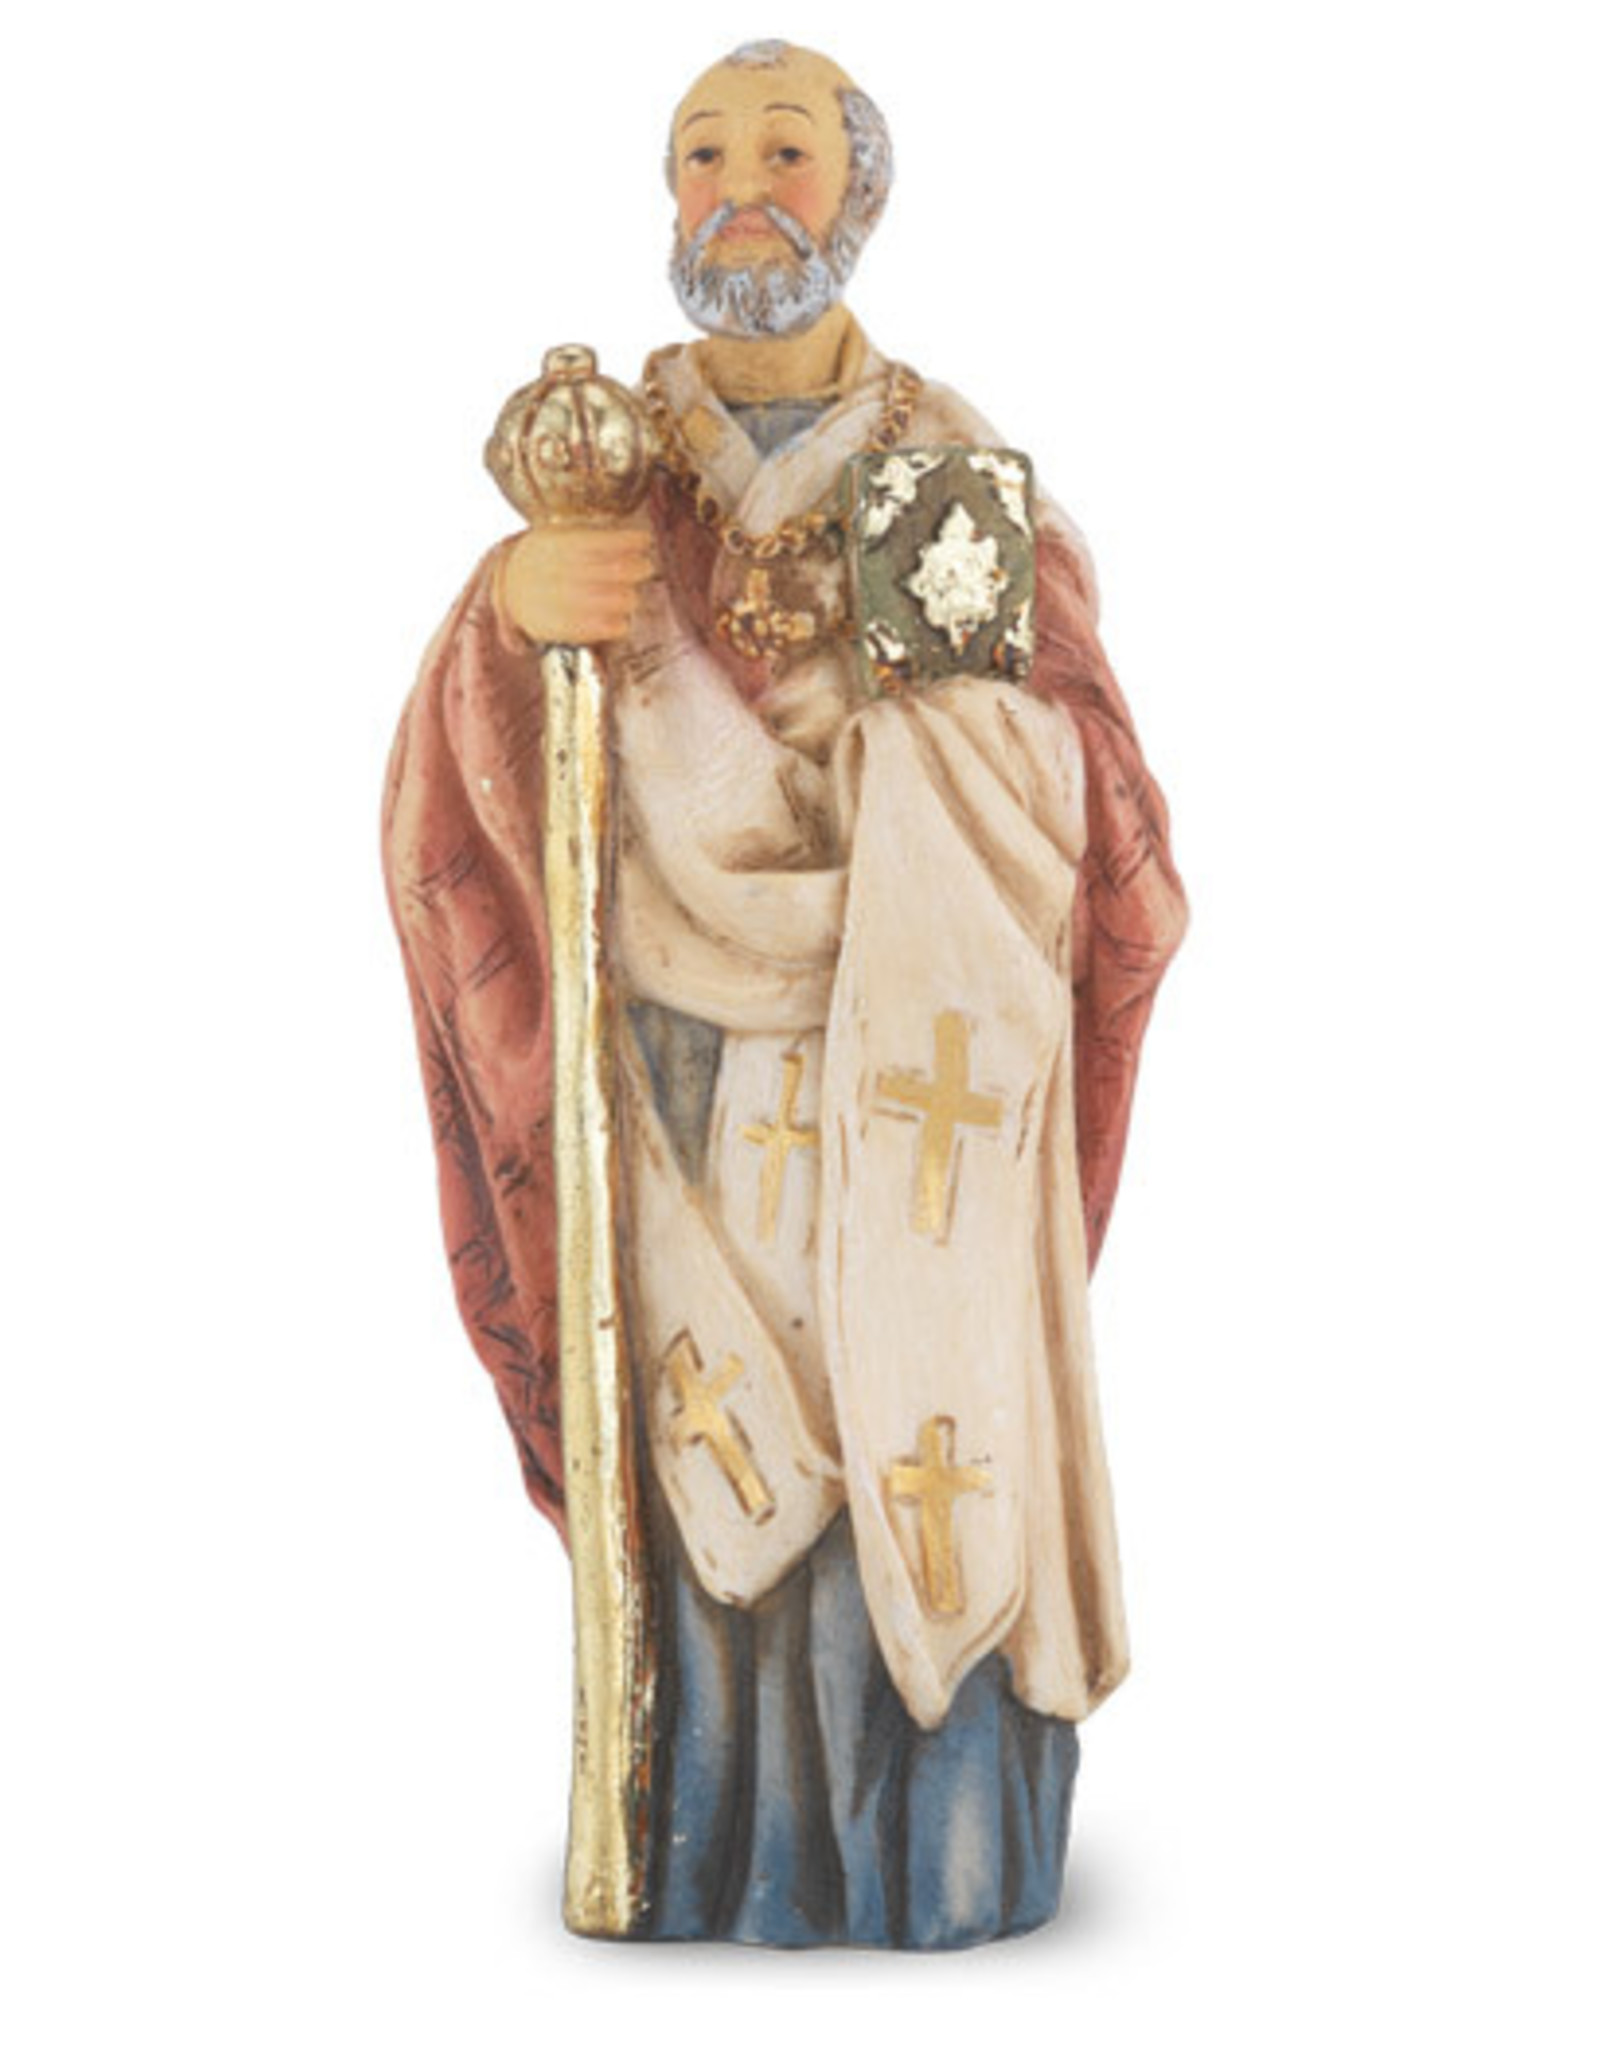 Hirten Patron Saint Statue - St. Nicholas of Myra